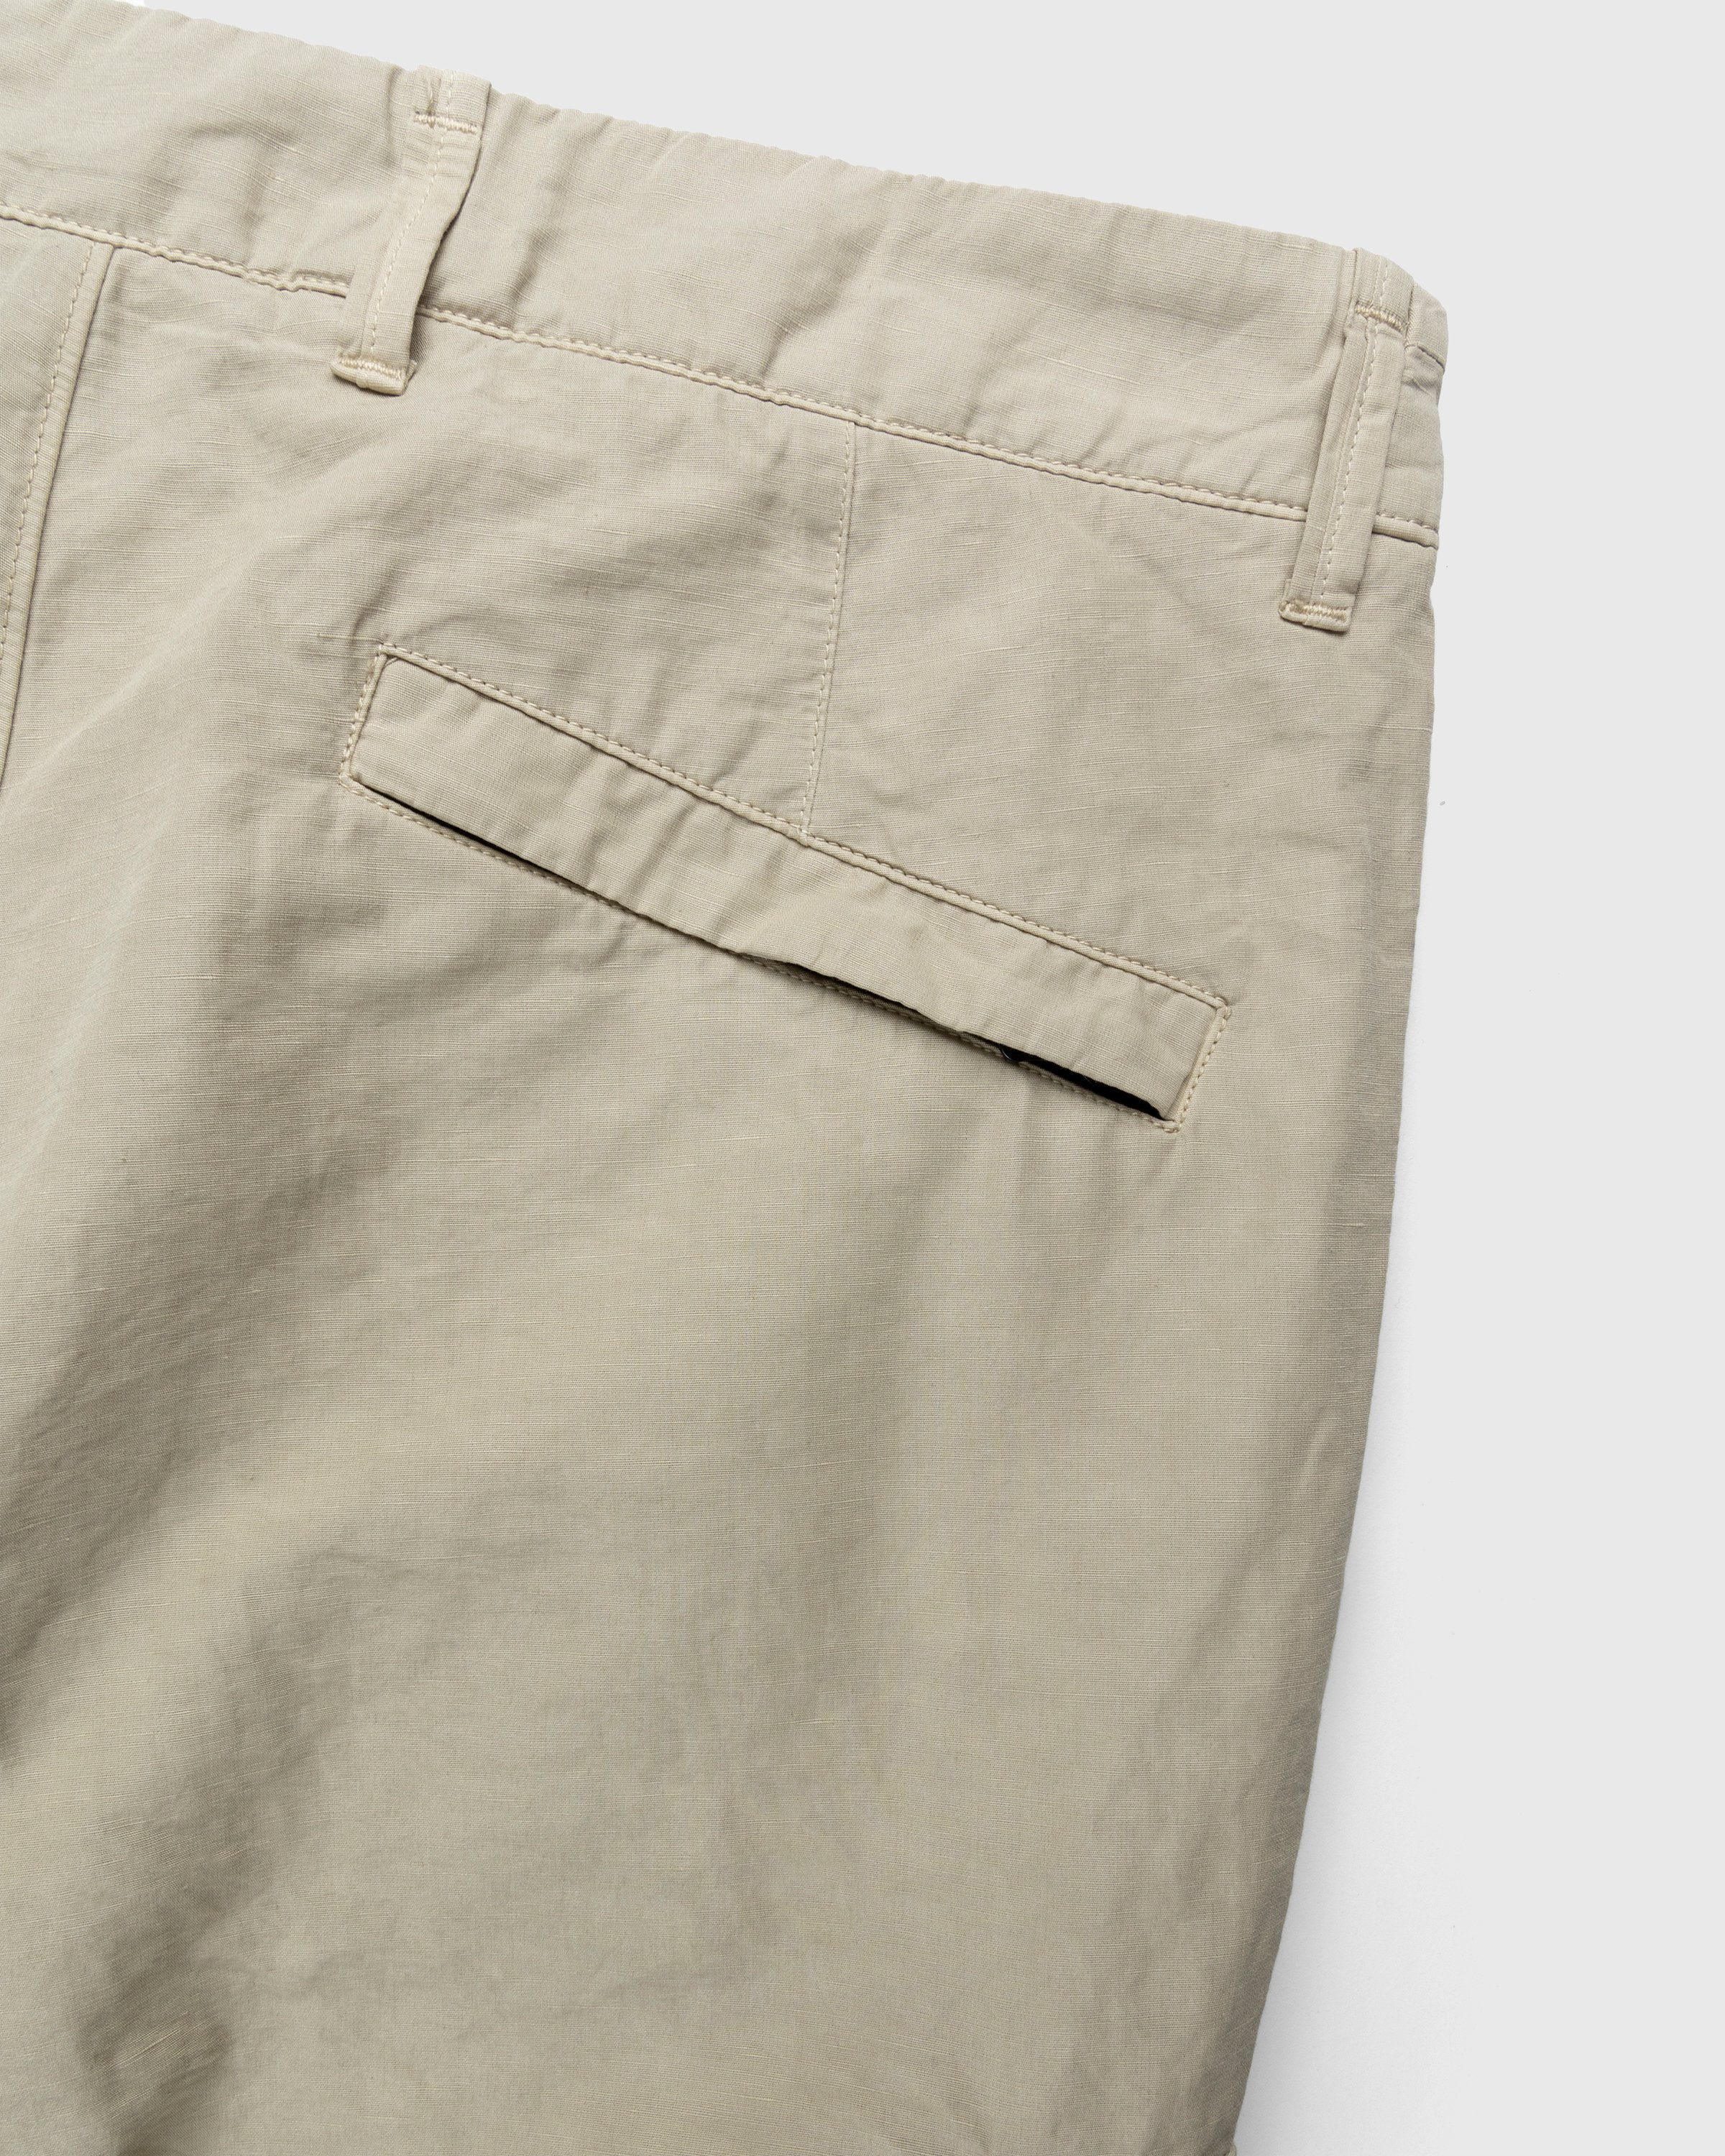 Stone Island - 31706 Garment-Dyed Cargo Pants Khaki - Clothing - Beige - Image 4